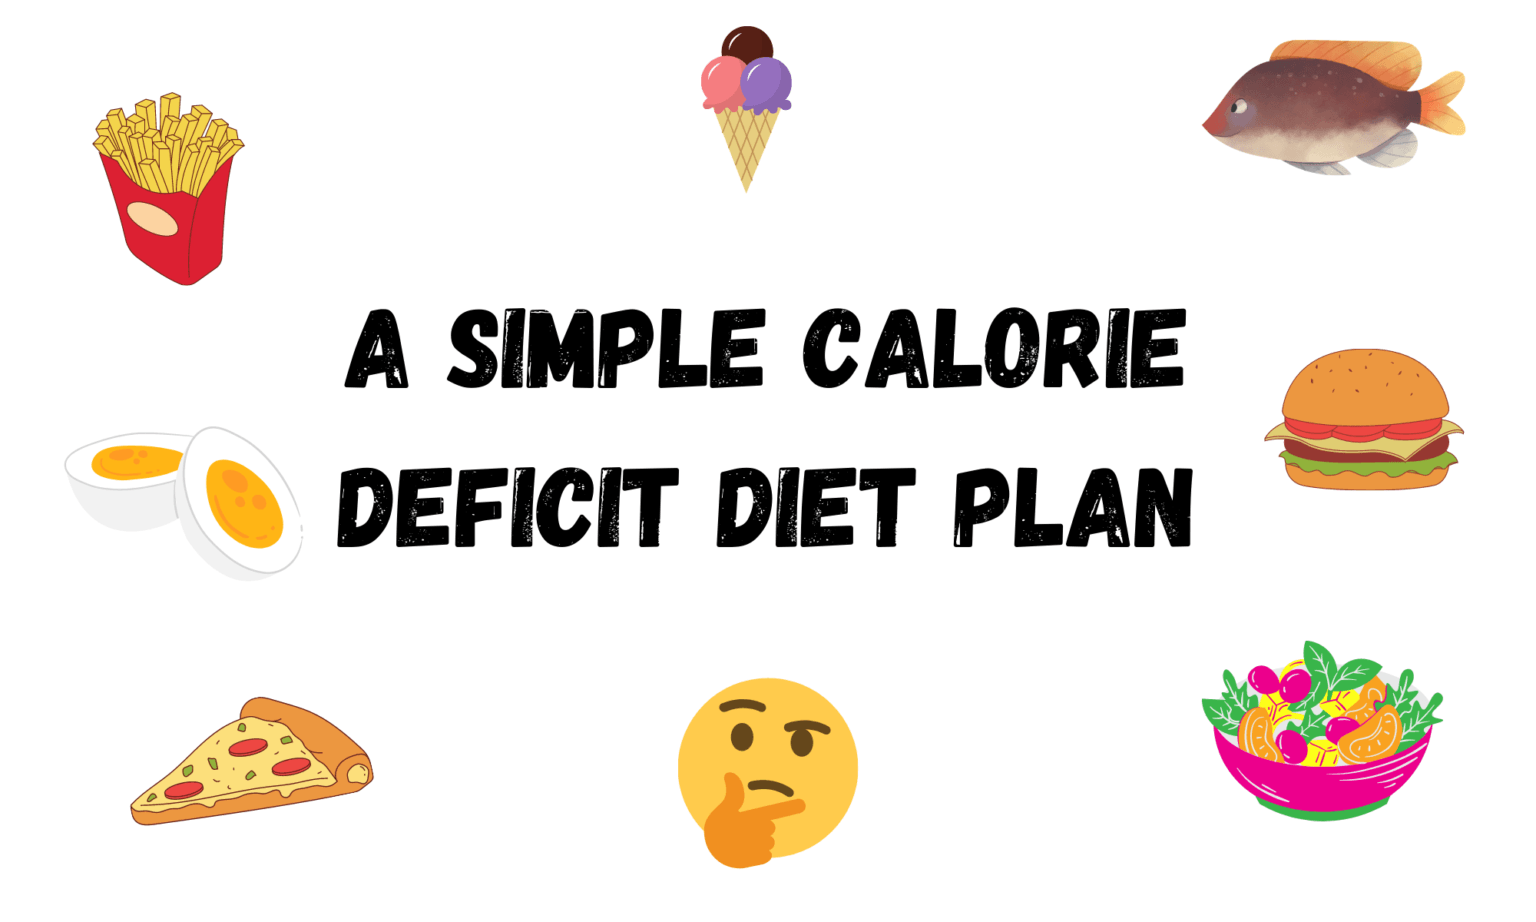 Image of a simple calorie deficit diet plan